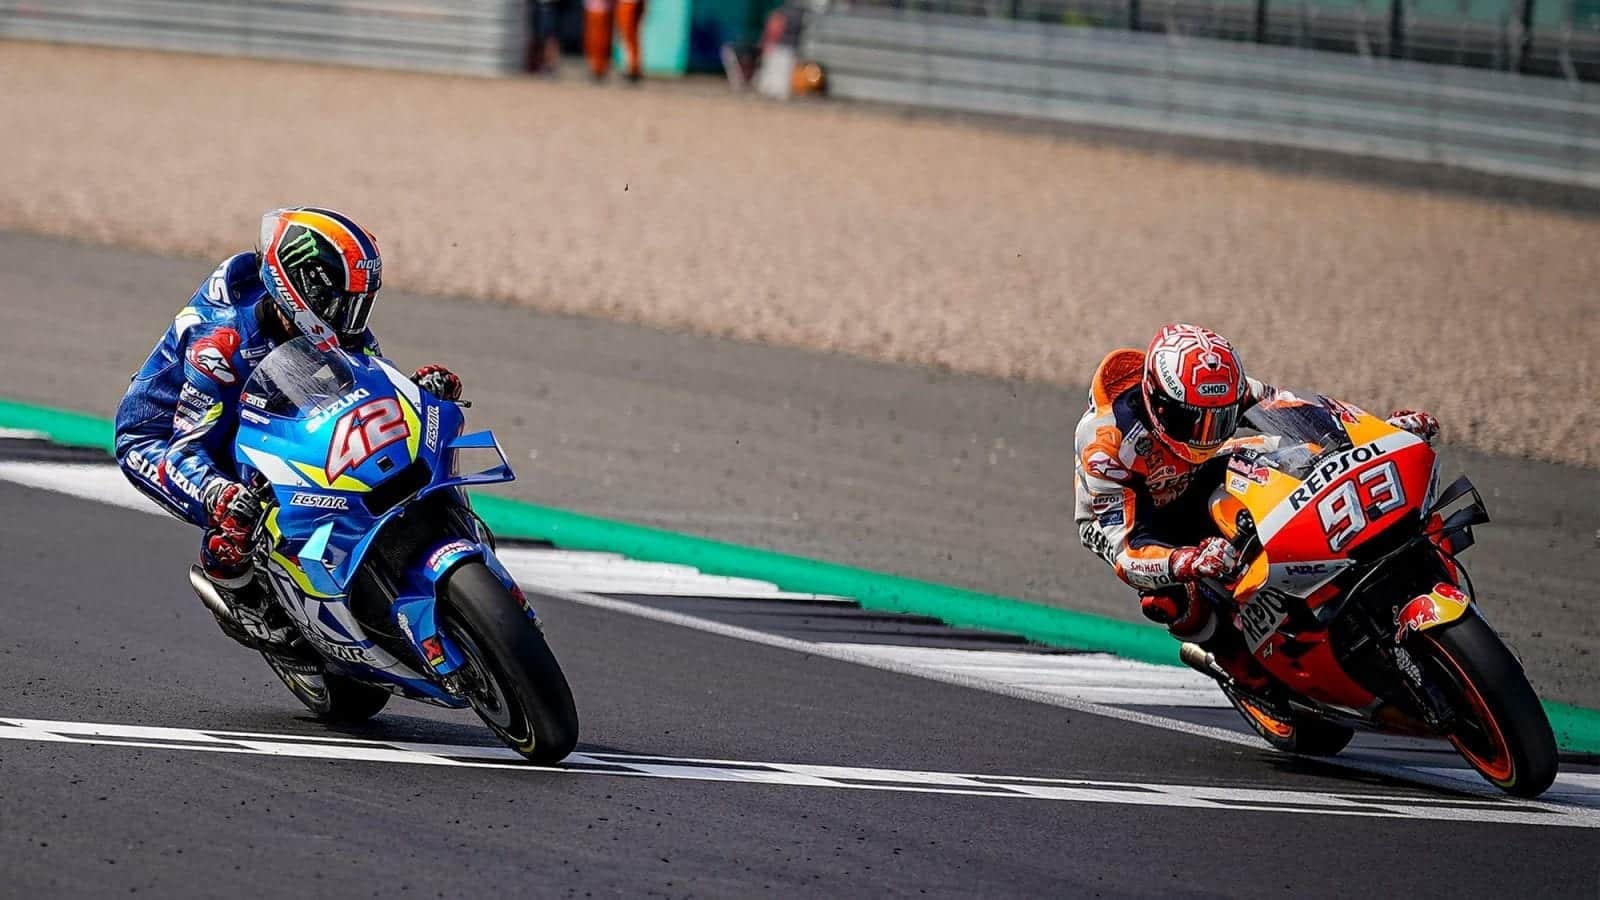 2019 MotoGP British GP Rins and Marquez